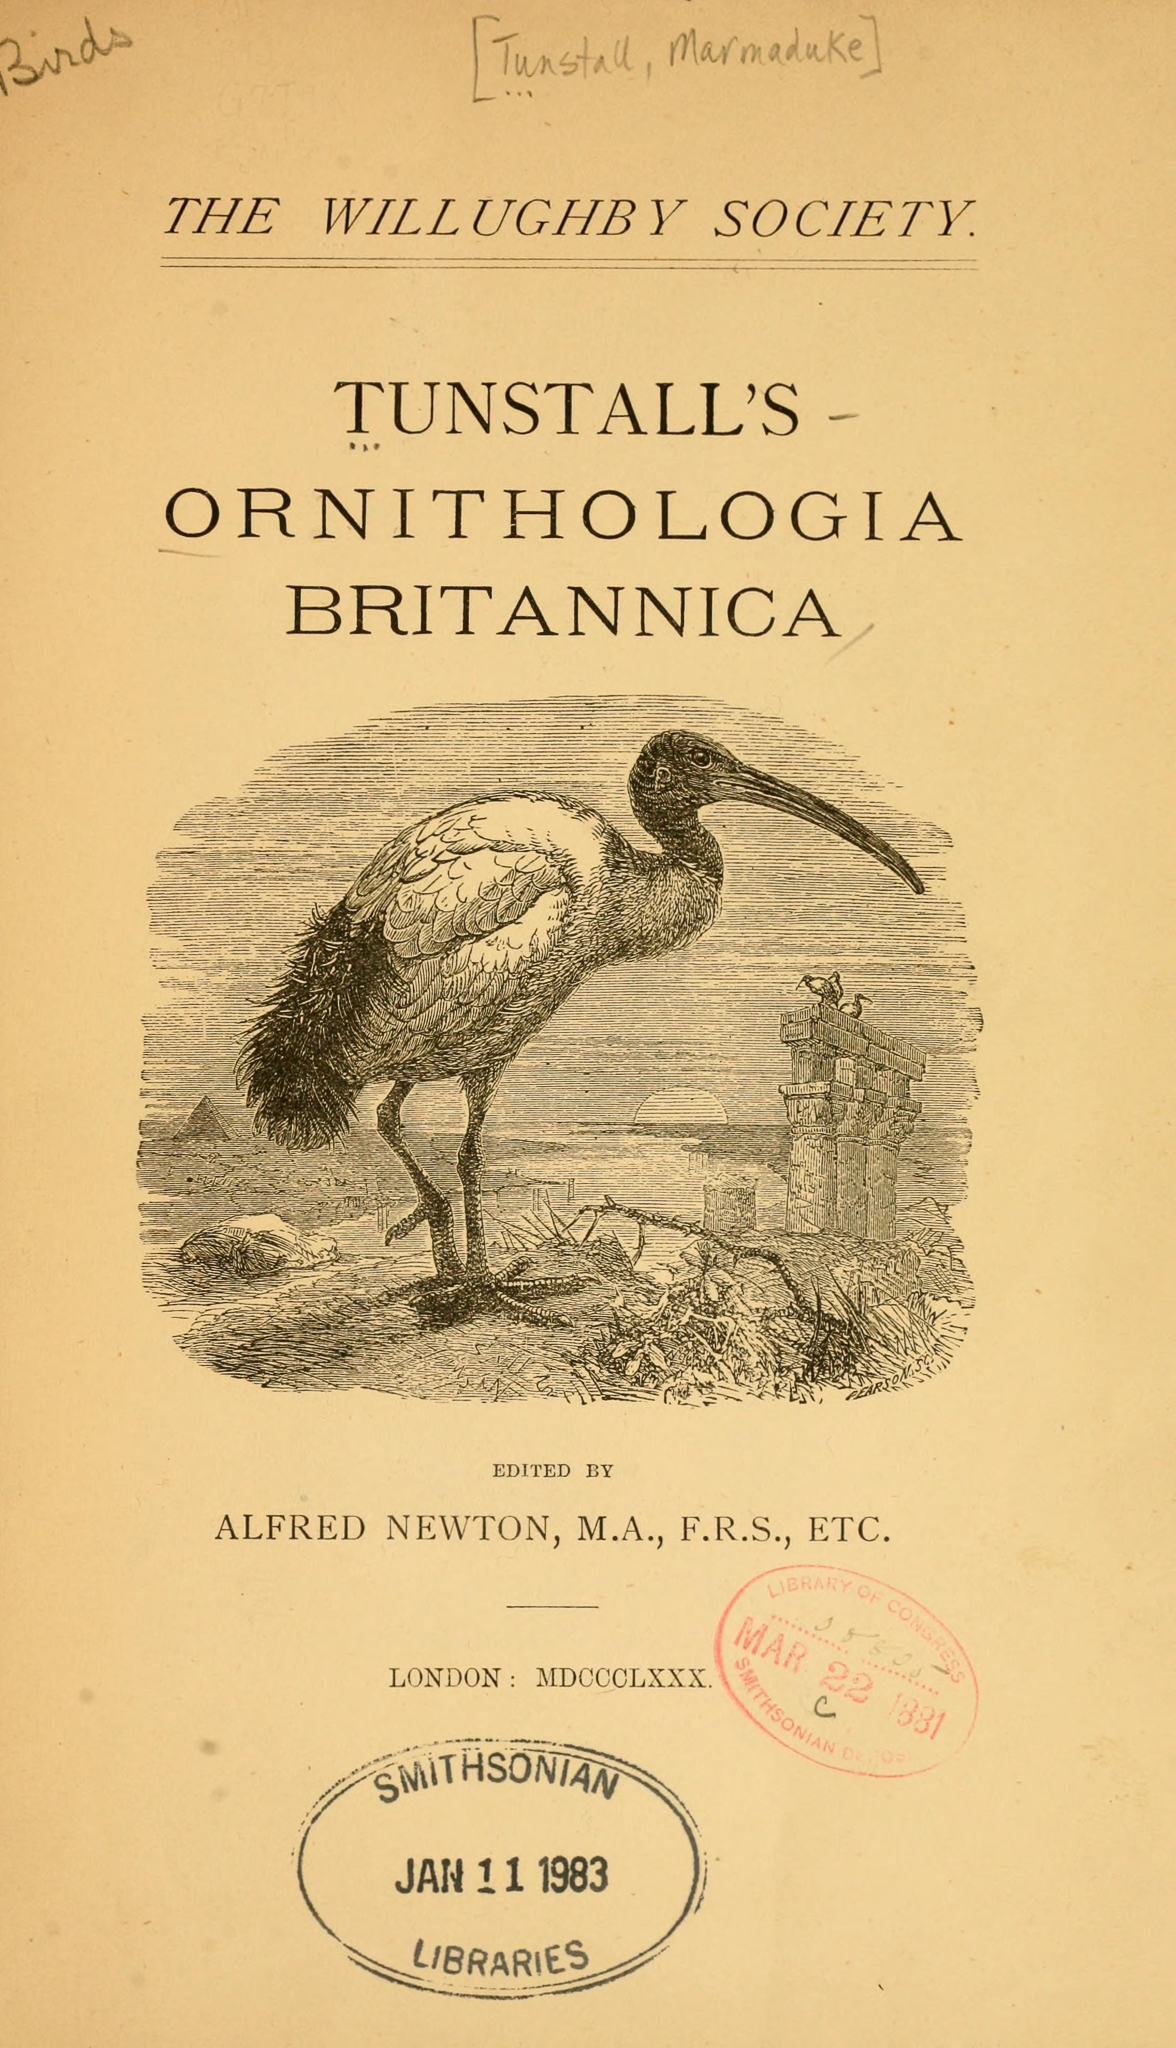 Ornithologia Britannica - The Hall of Einar